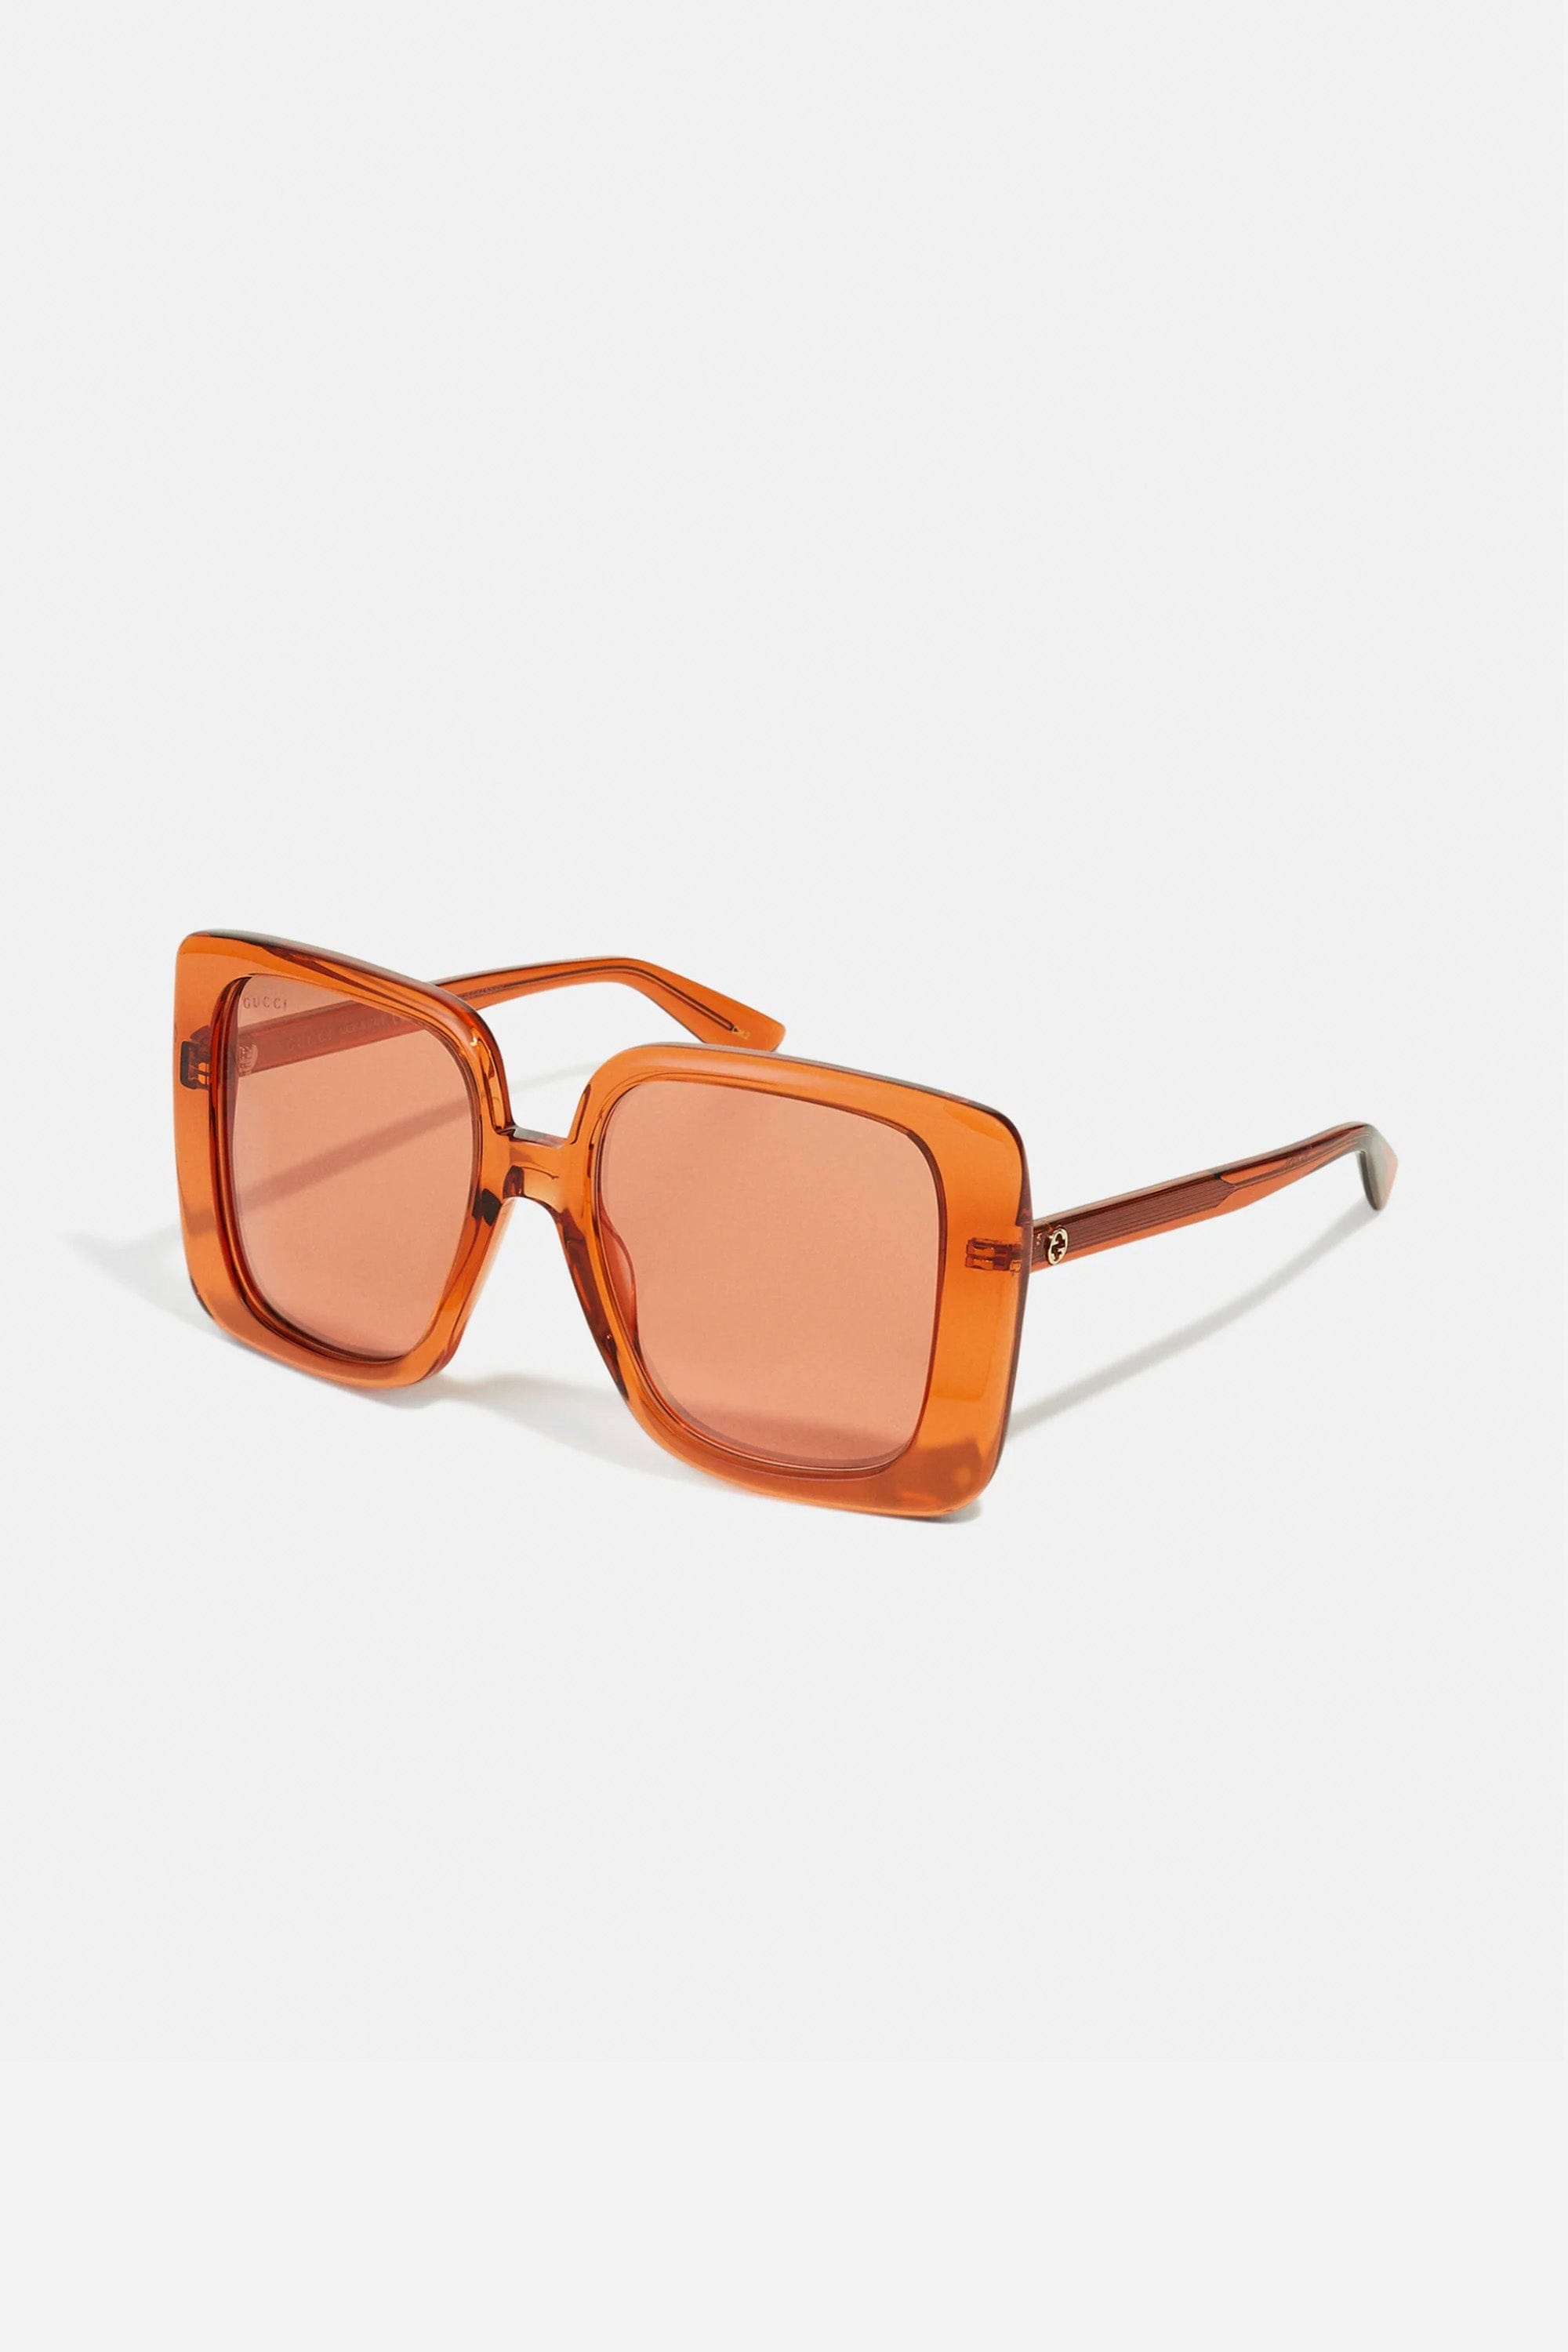 Gucci Oversize Squared Femenine orange Sunglasses - Eyewear Club